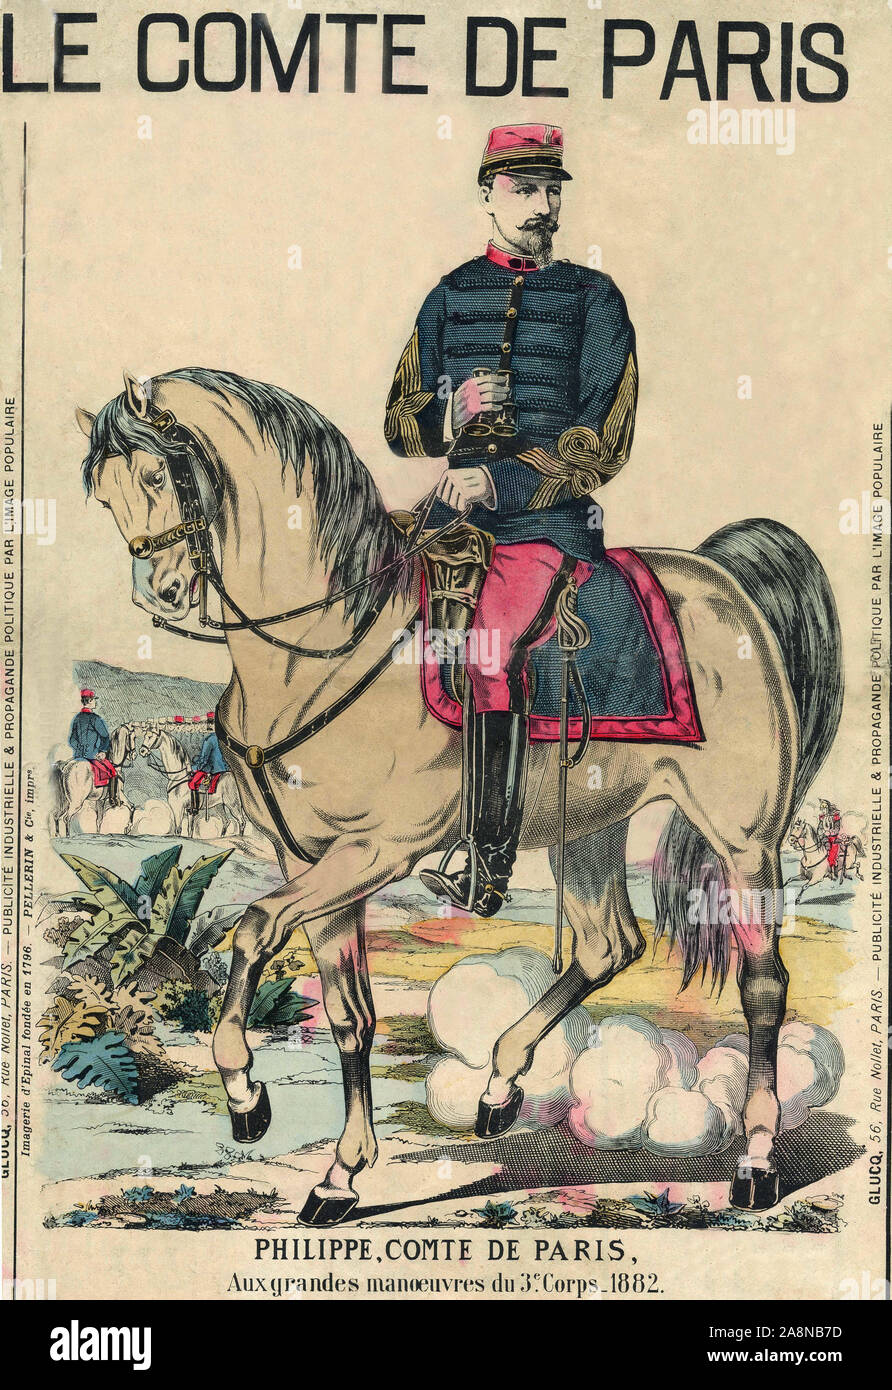 'Le Comte de Paris' : Philippe d'Orleans (1838-1894), il fut considere comme l'heritier du trone de France par ses partisans. Gravure, in 'Le Figaro, Stock Photo